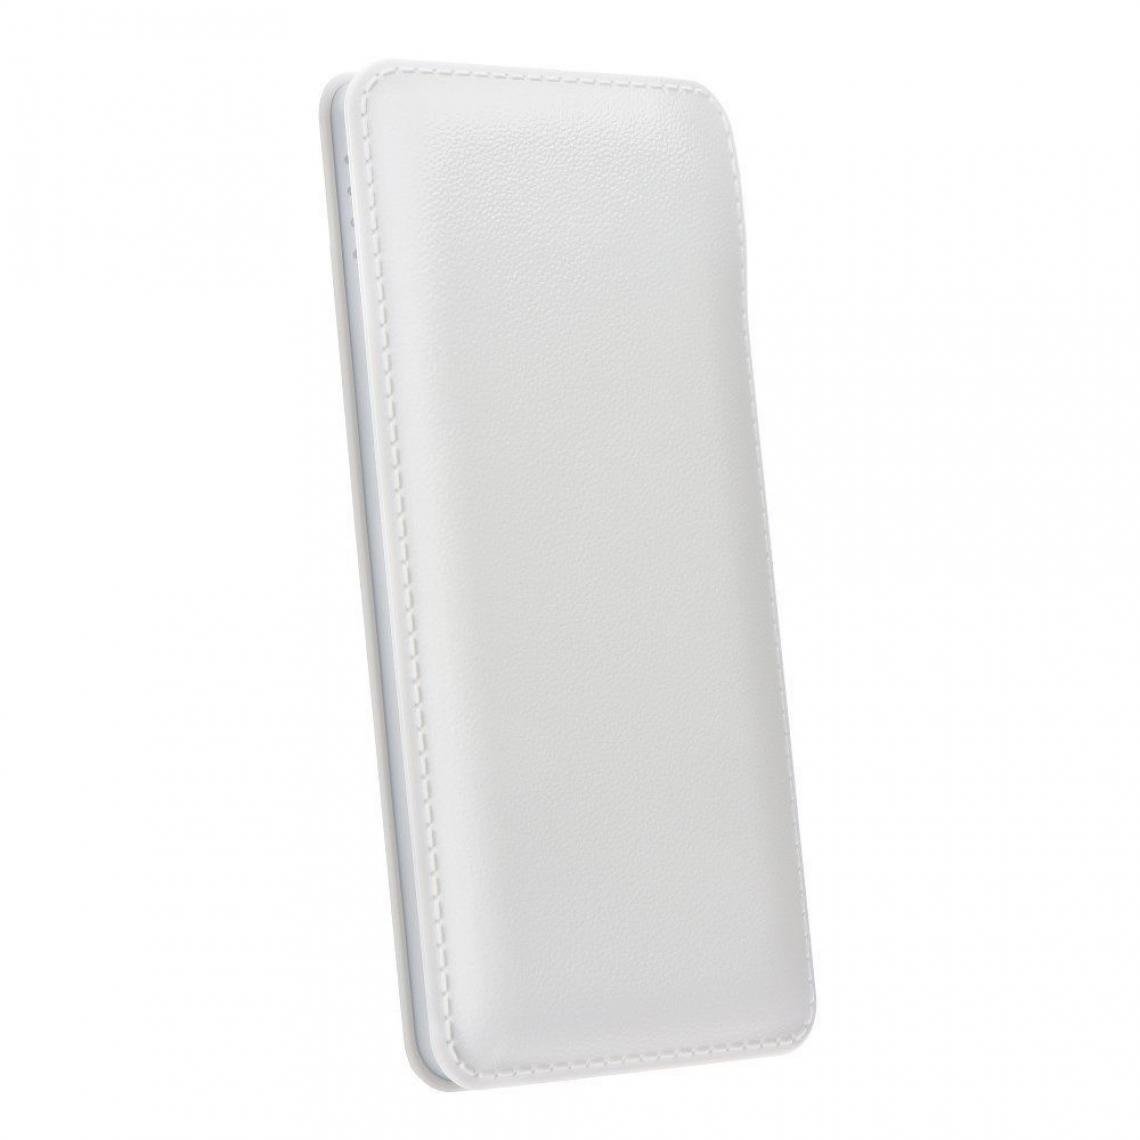 Ozzzo - Chargeur batterie externe 20000 mAh powerbank ozzzo blanc pour Samsung Galaxy A21s - Autres accessoires smartphone